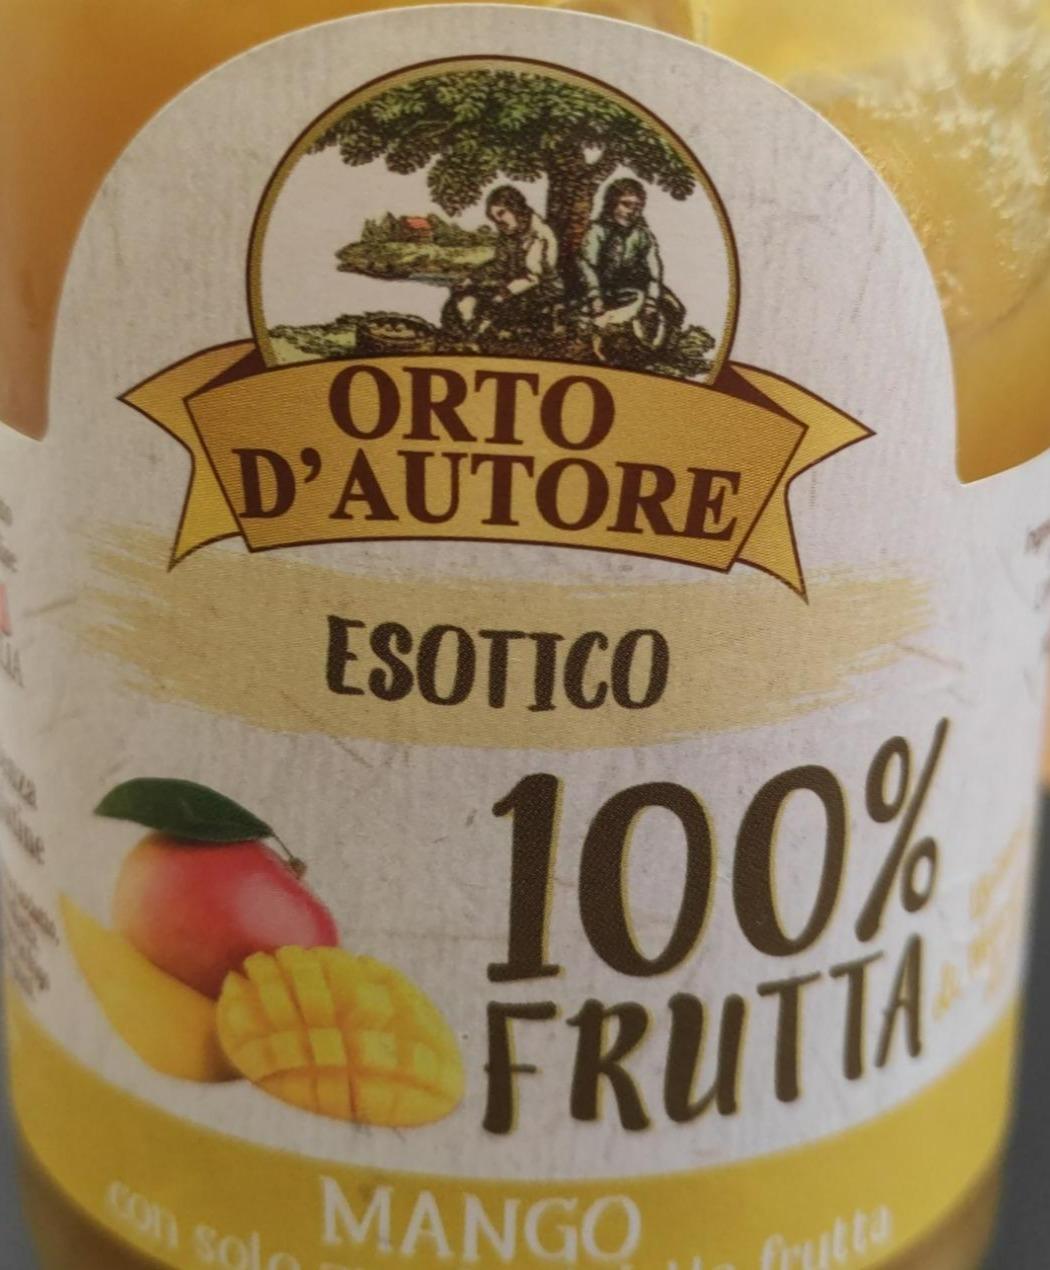 Fotografie - Esotico 100% Frutta Mango Orto D'autore